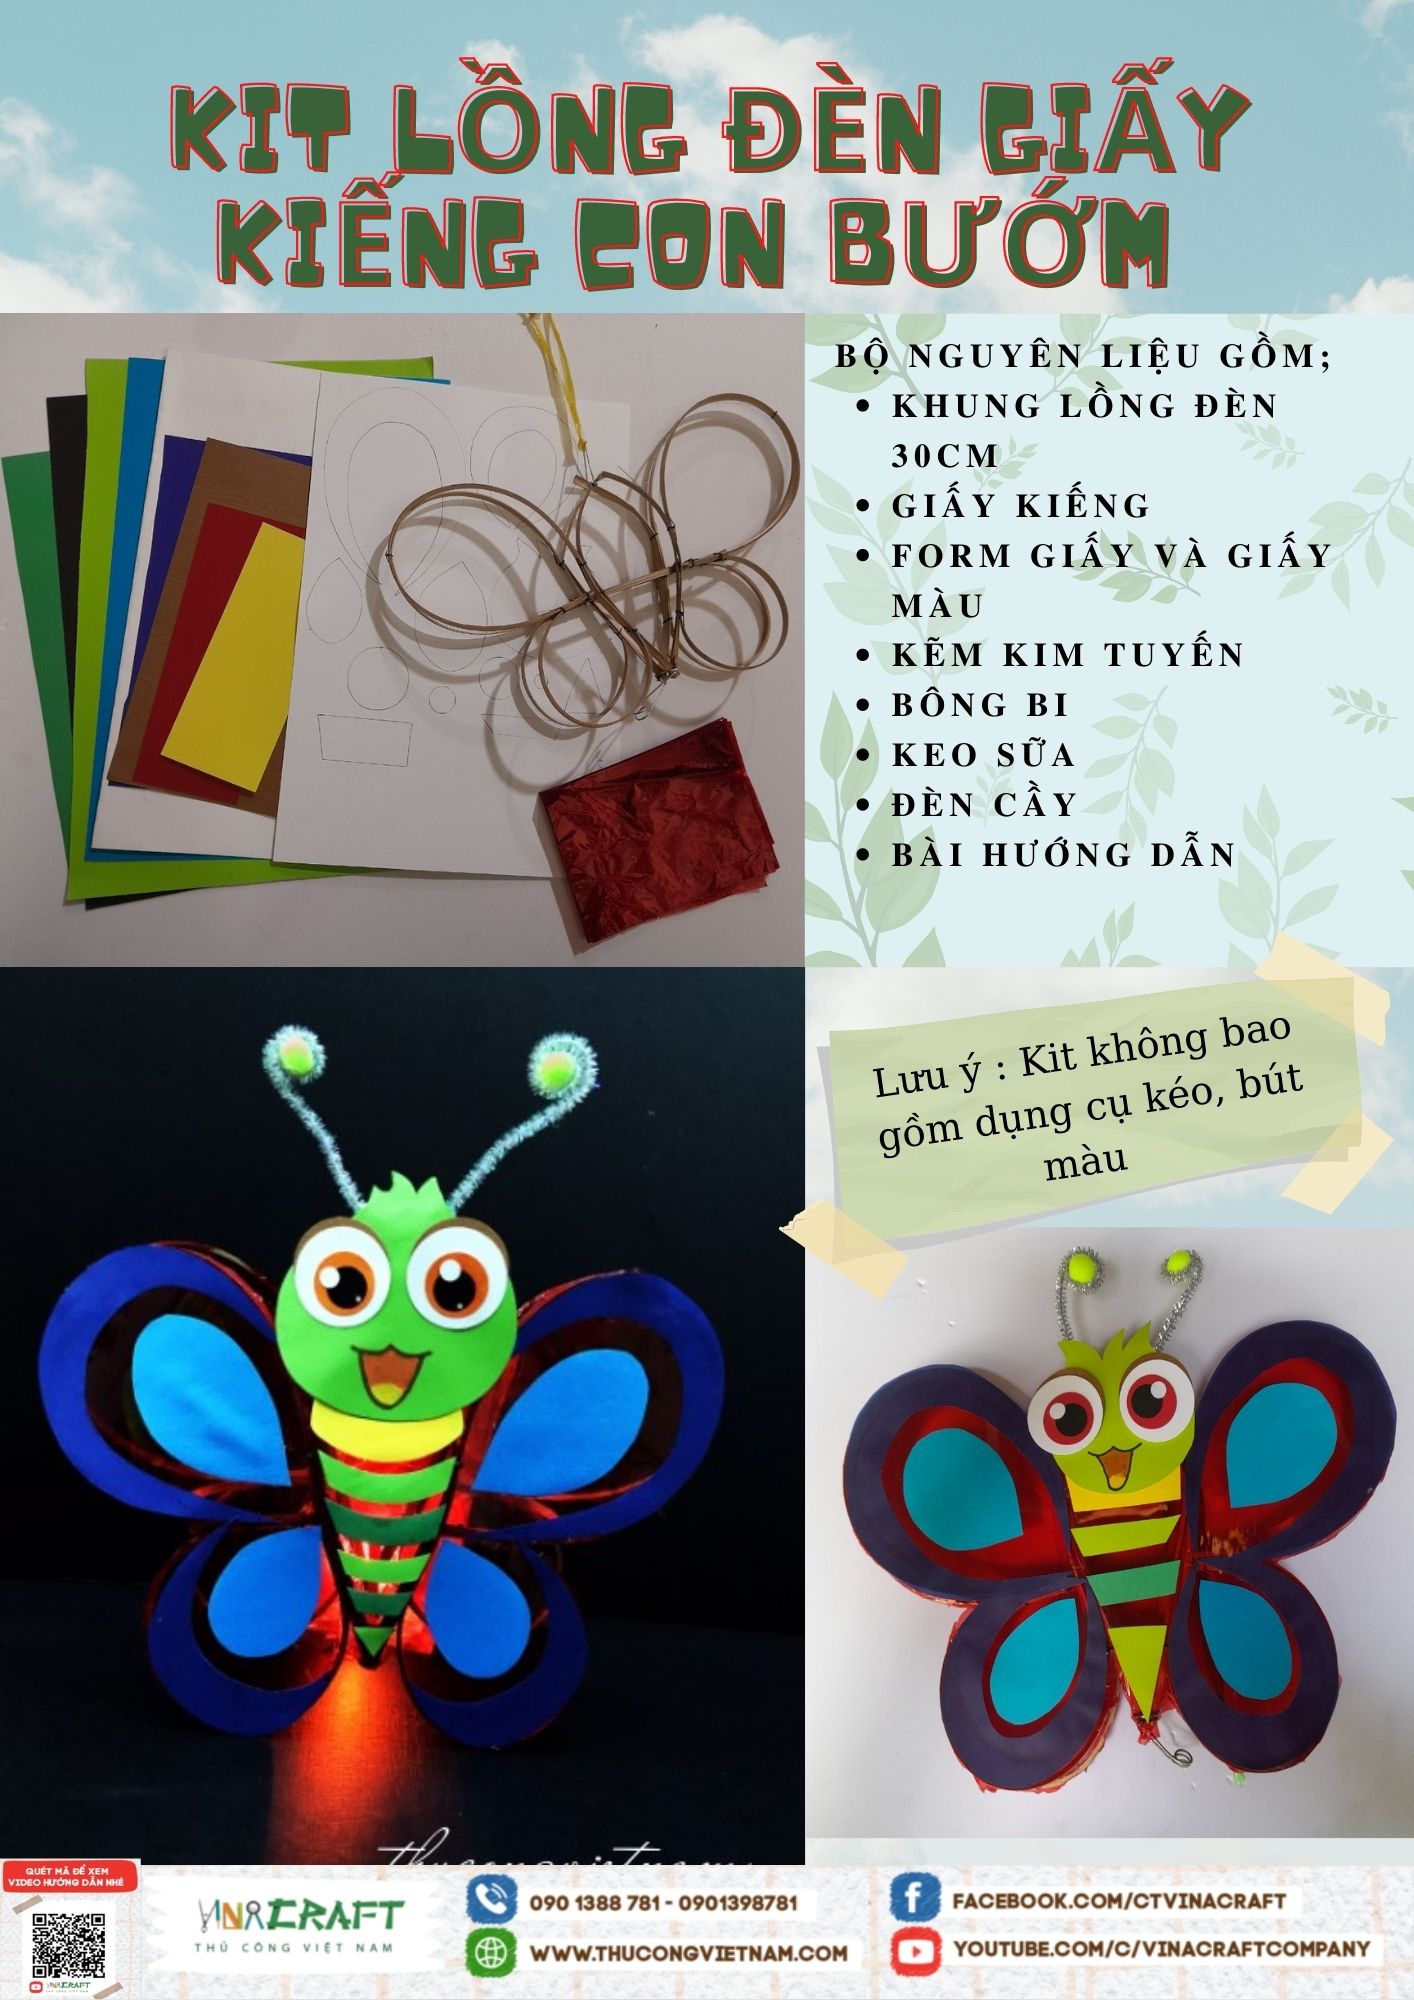 Bộ kit lồng đèn giấy kiếng con bướm (30cm)